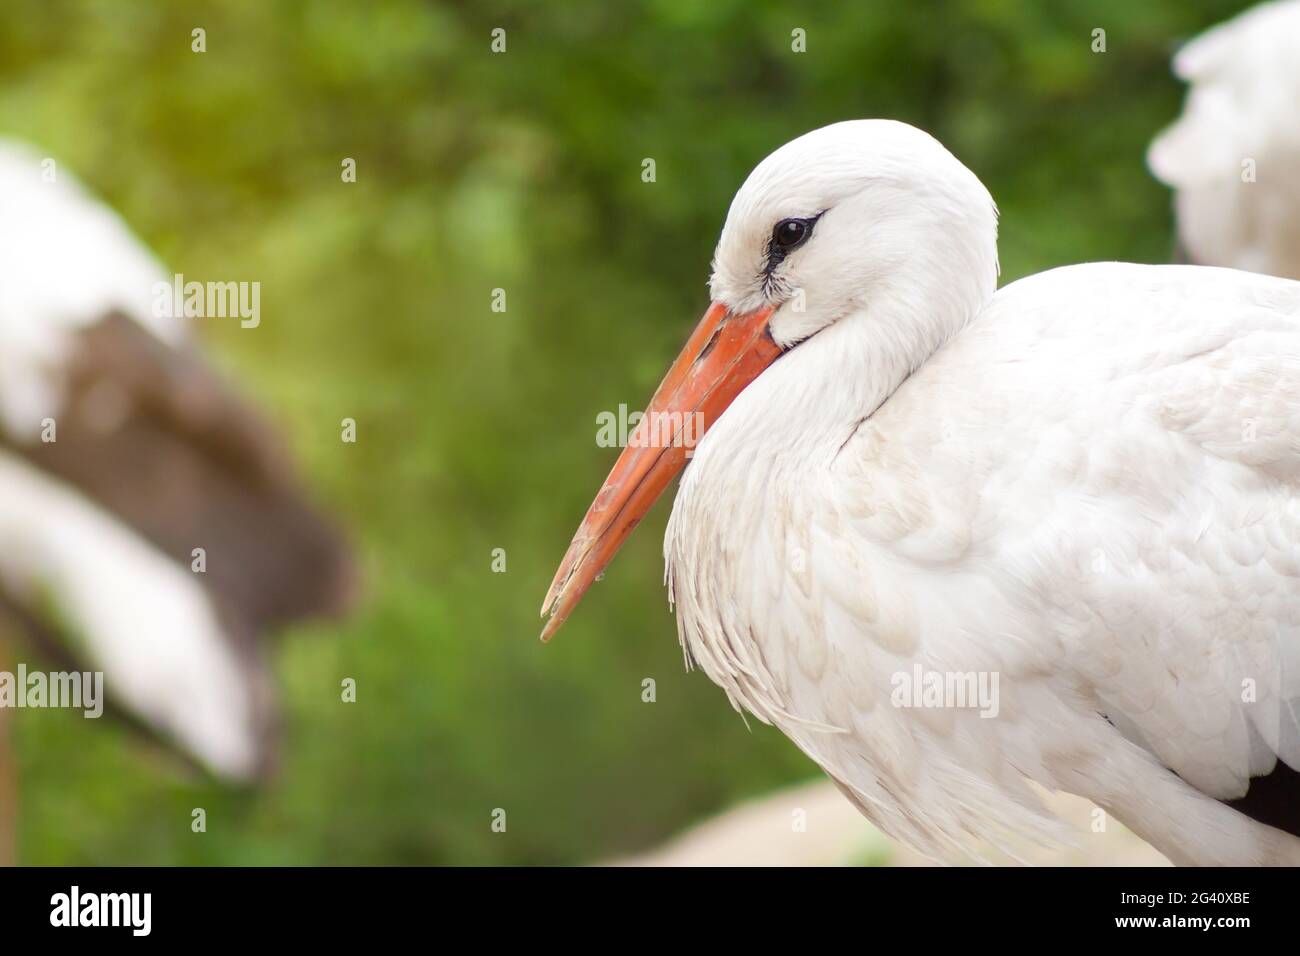 Cicogna bianca europea o ciconia. Singolo uccello riposante in un gruppo, primo piano di occhi e becco, sfondo verde offuscato Foto Stock